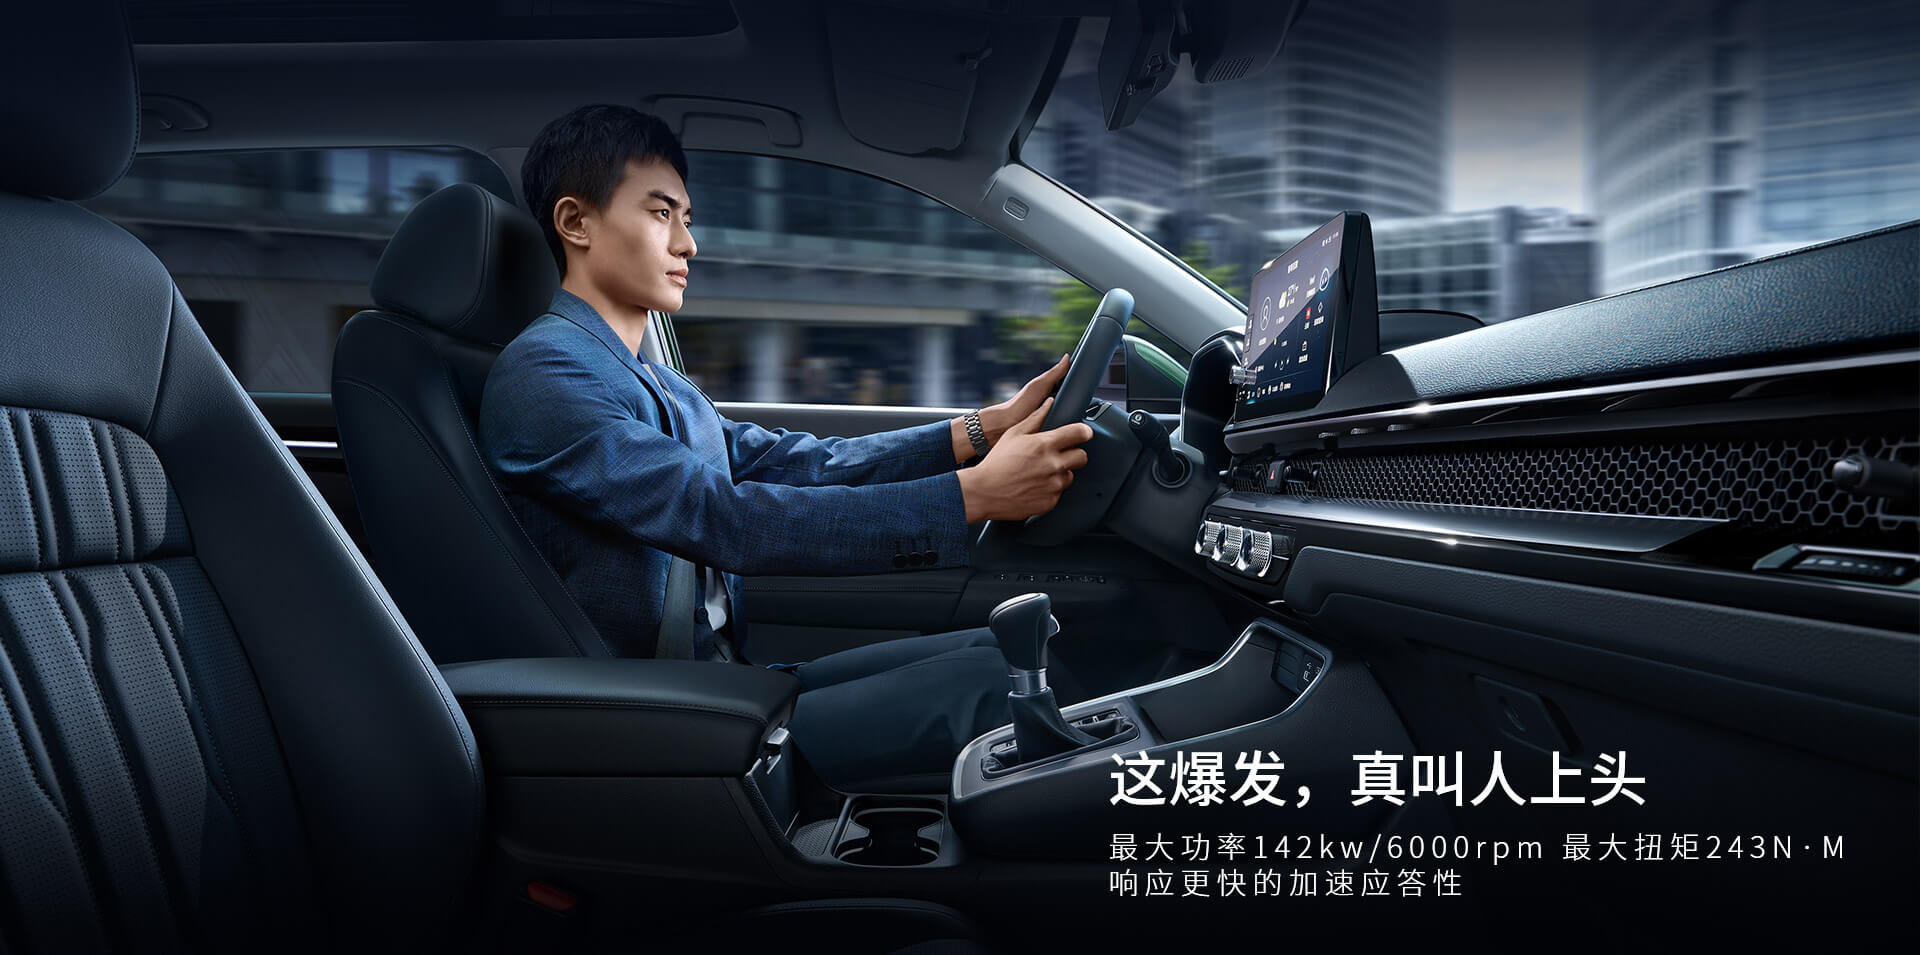 Honda Breeze - CR-V Trung Quốc được nhá hàng thế hệ mới - Ảnh 8.